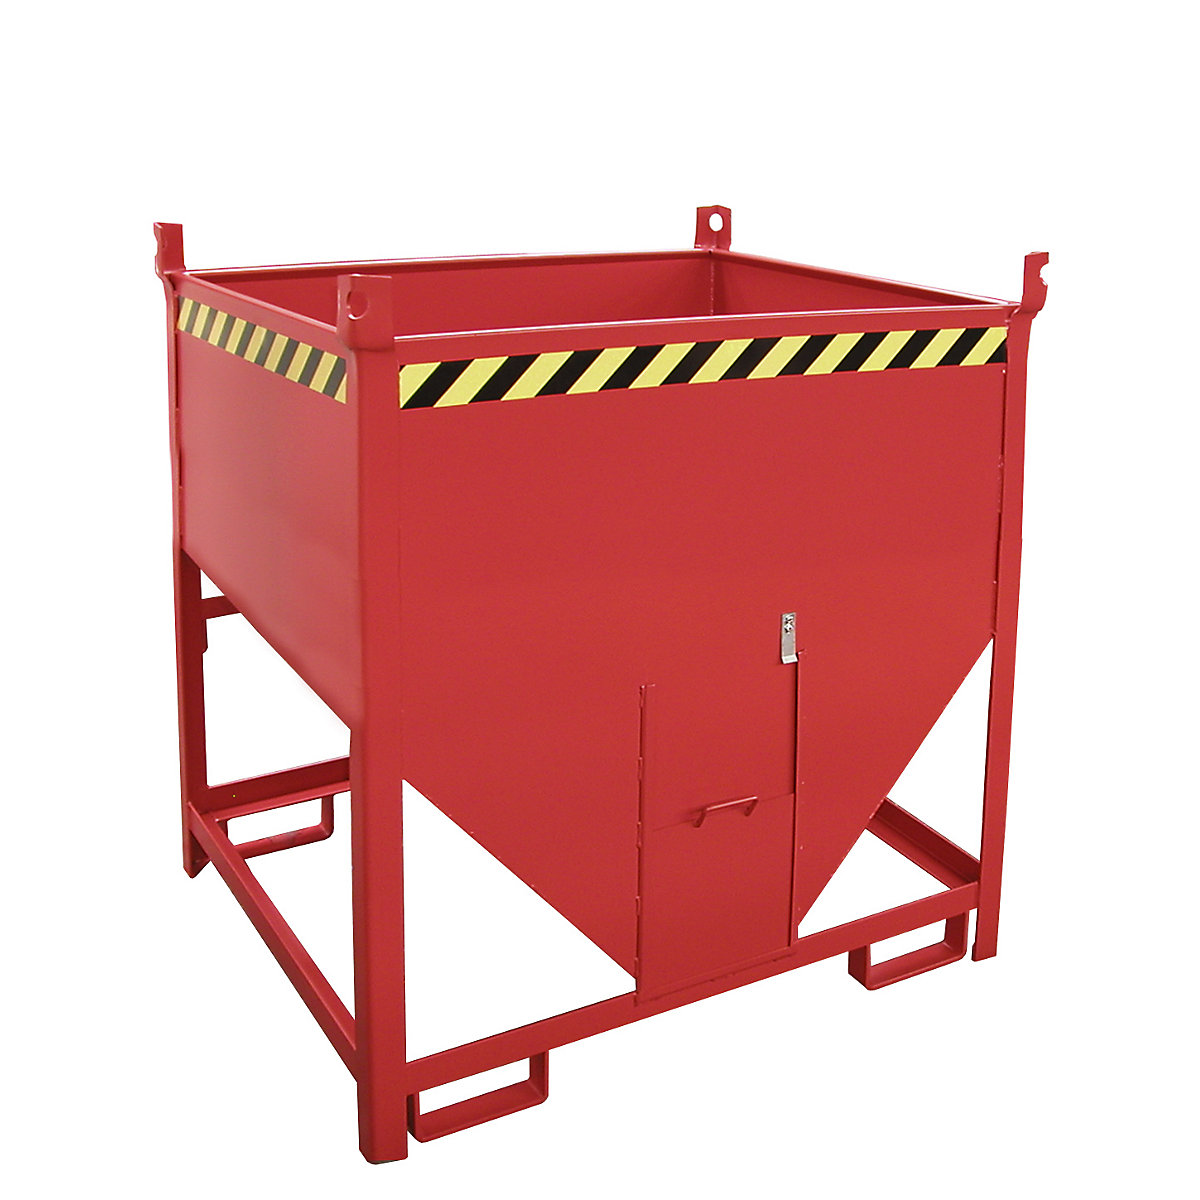 Prekucni zaboj – eurokraft pro, prostornina 0,75 m³, z drsno zaporo na čelni strani, ognjeno rdeče barve RAL 3000-6